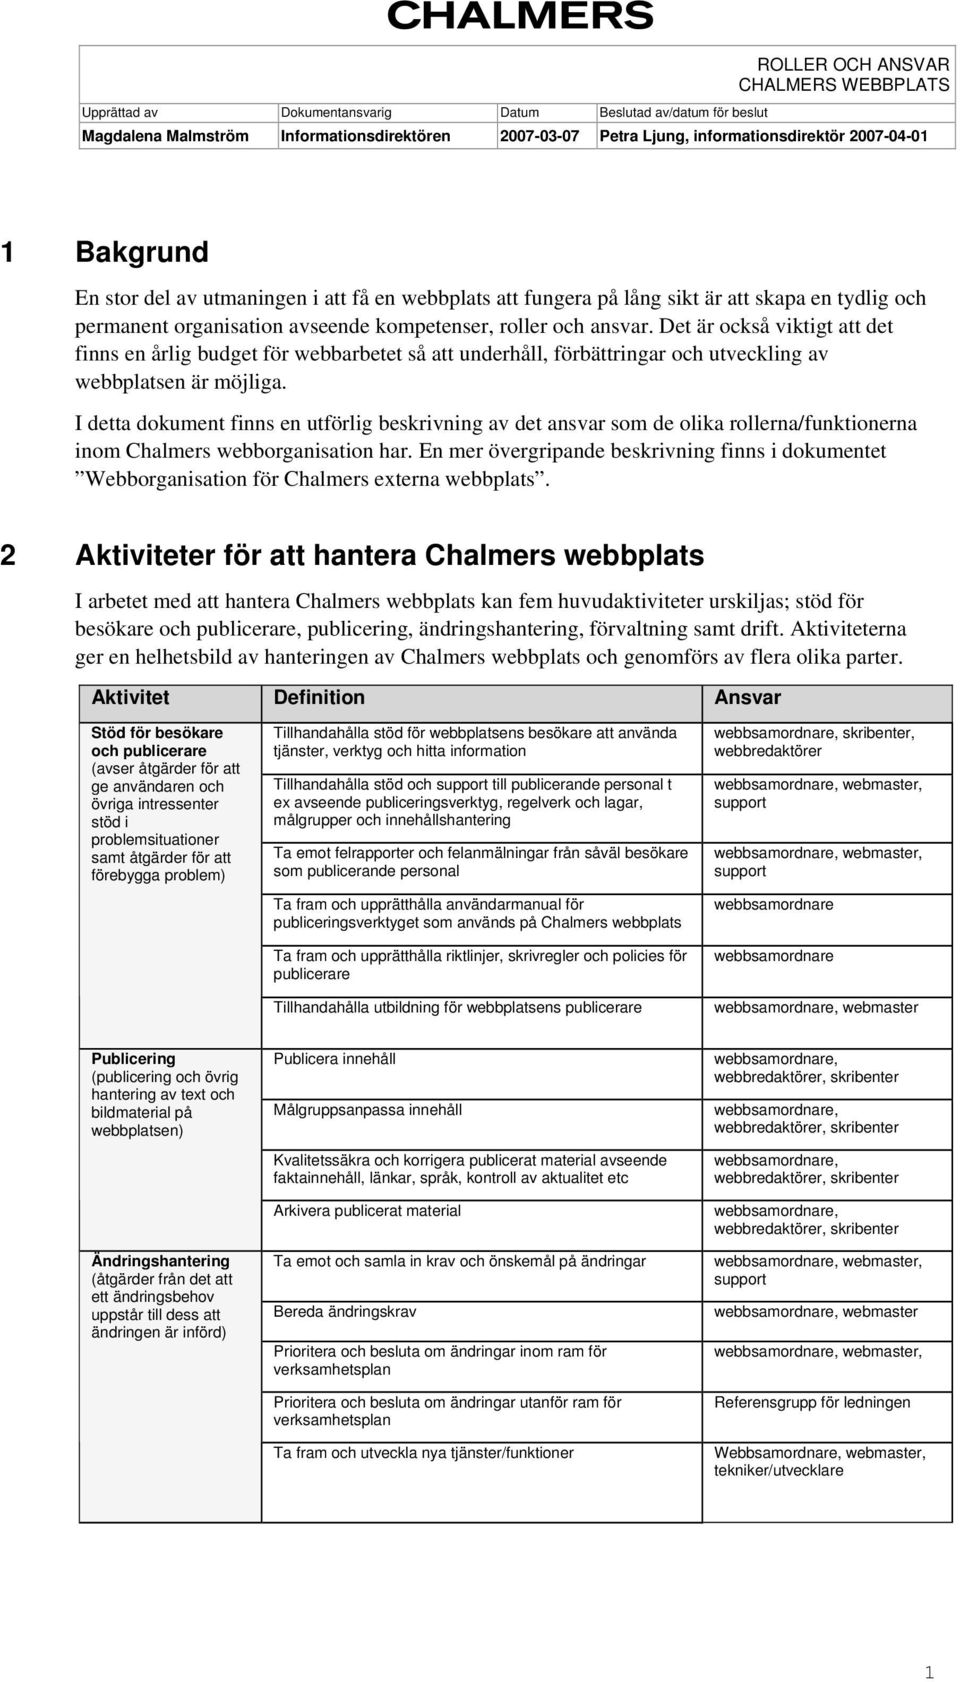 I detta dokument finns en utförlig beskrivning av det ansvar som de olika rollerna/funktionerna inom Chalmers webborganisation har.